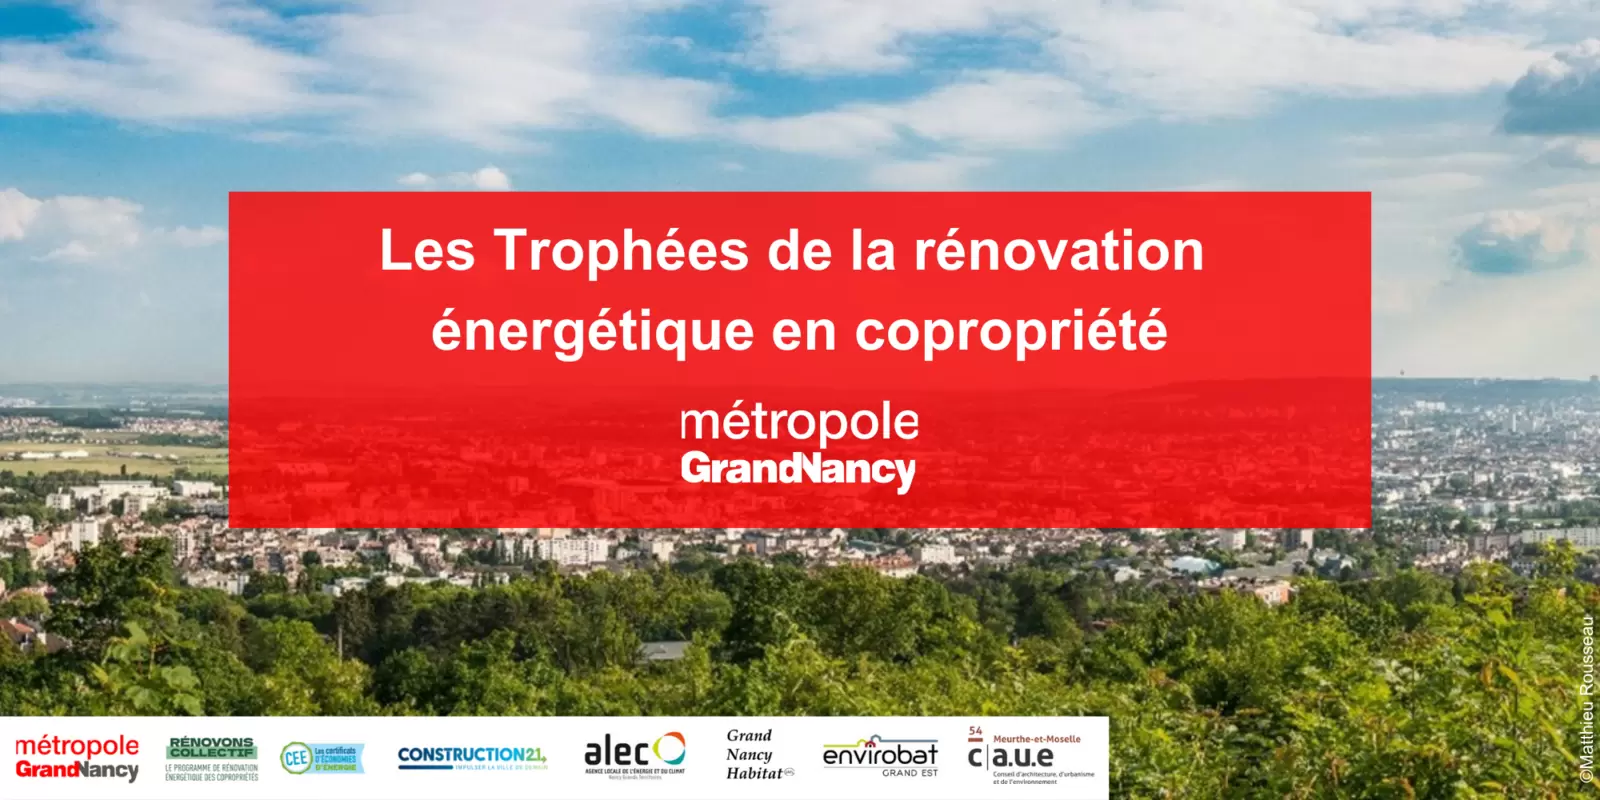 Trophées de la rénovation énergétique en copropriété du Grand Nancy